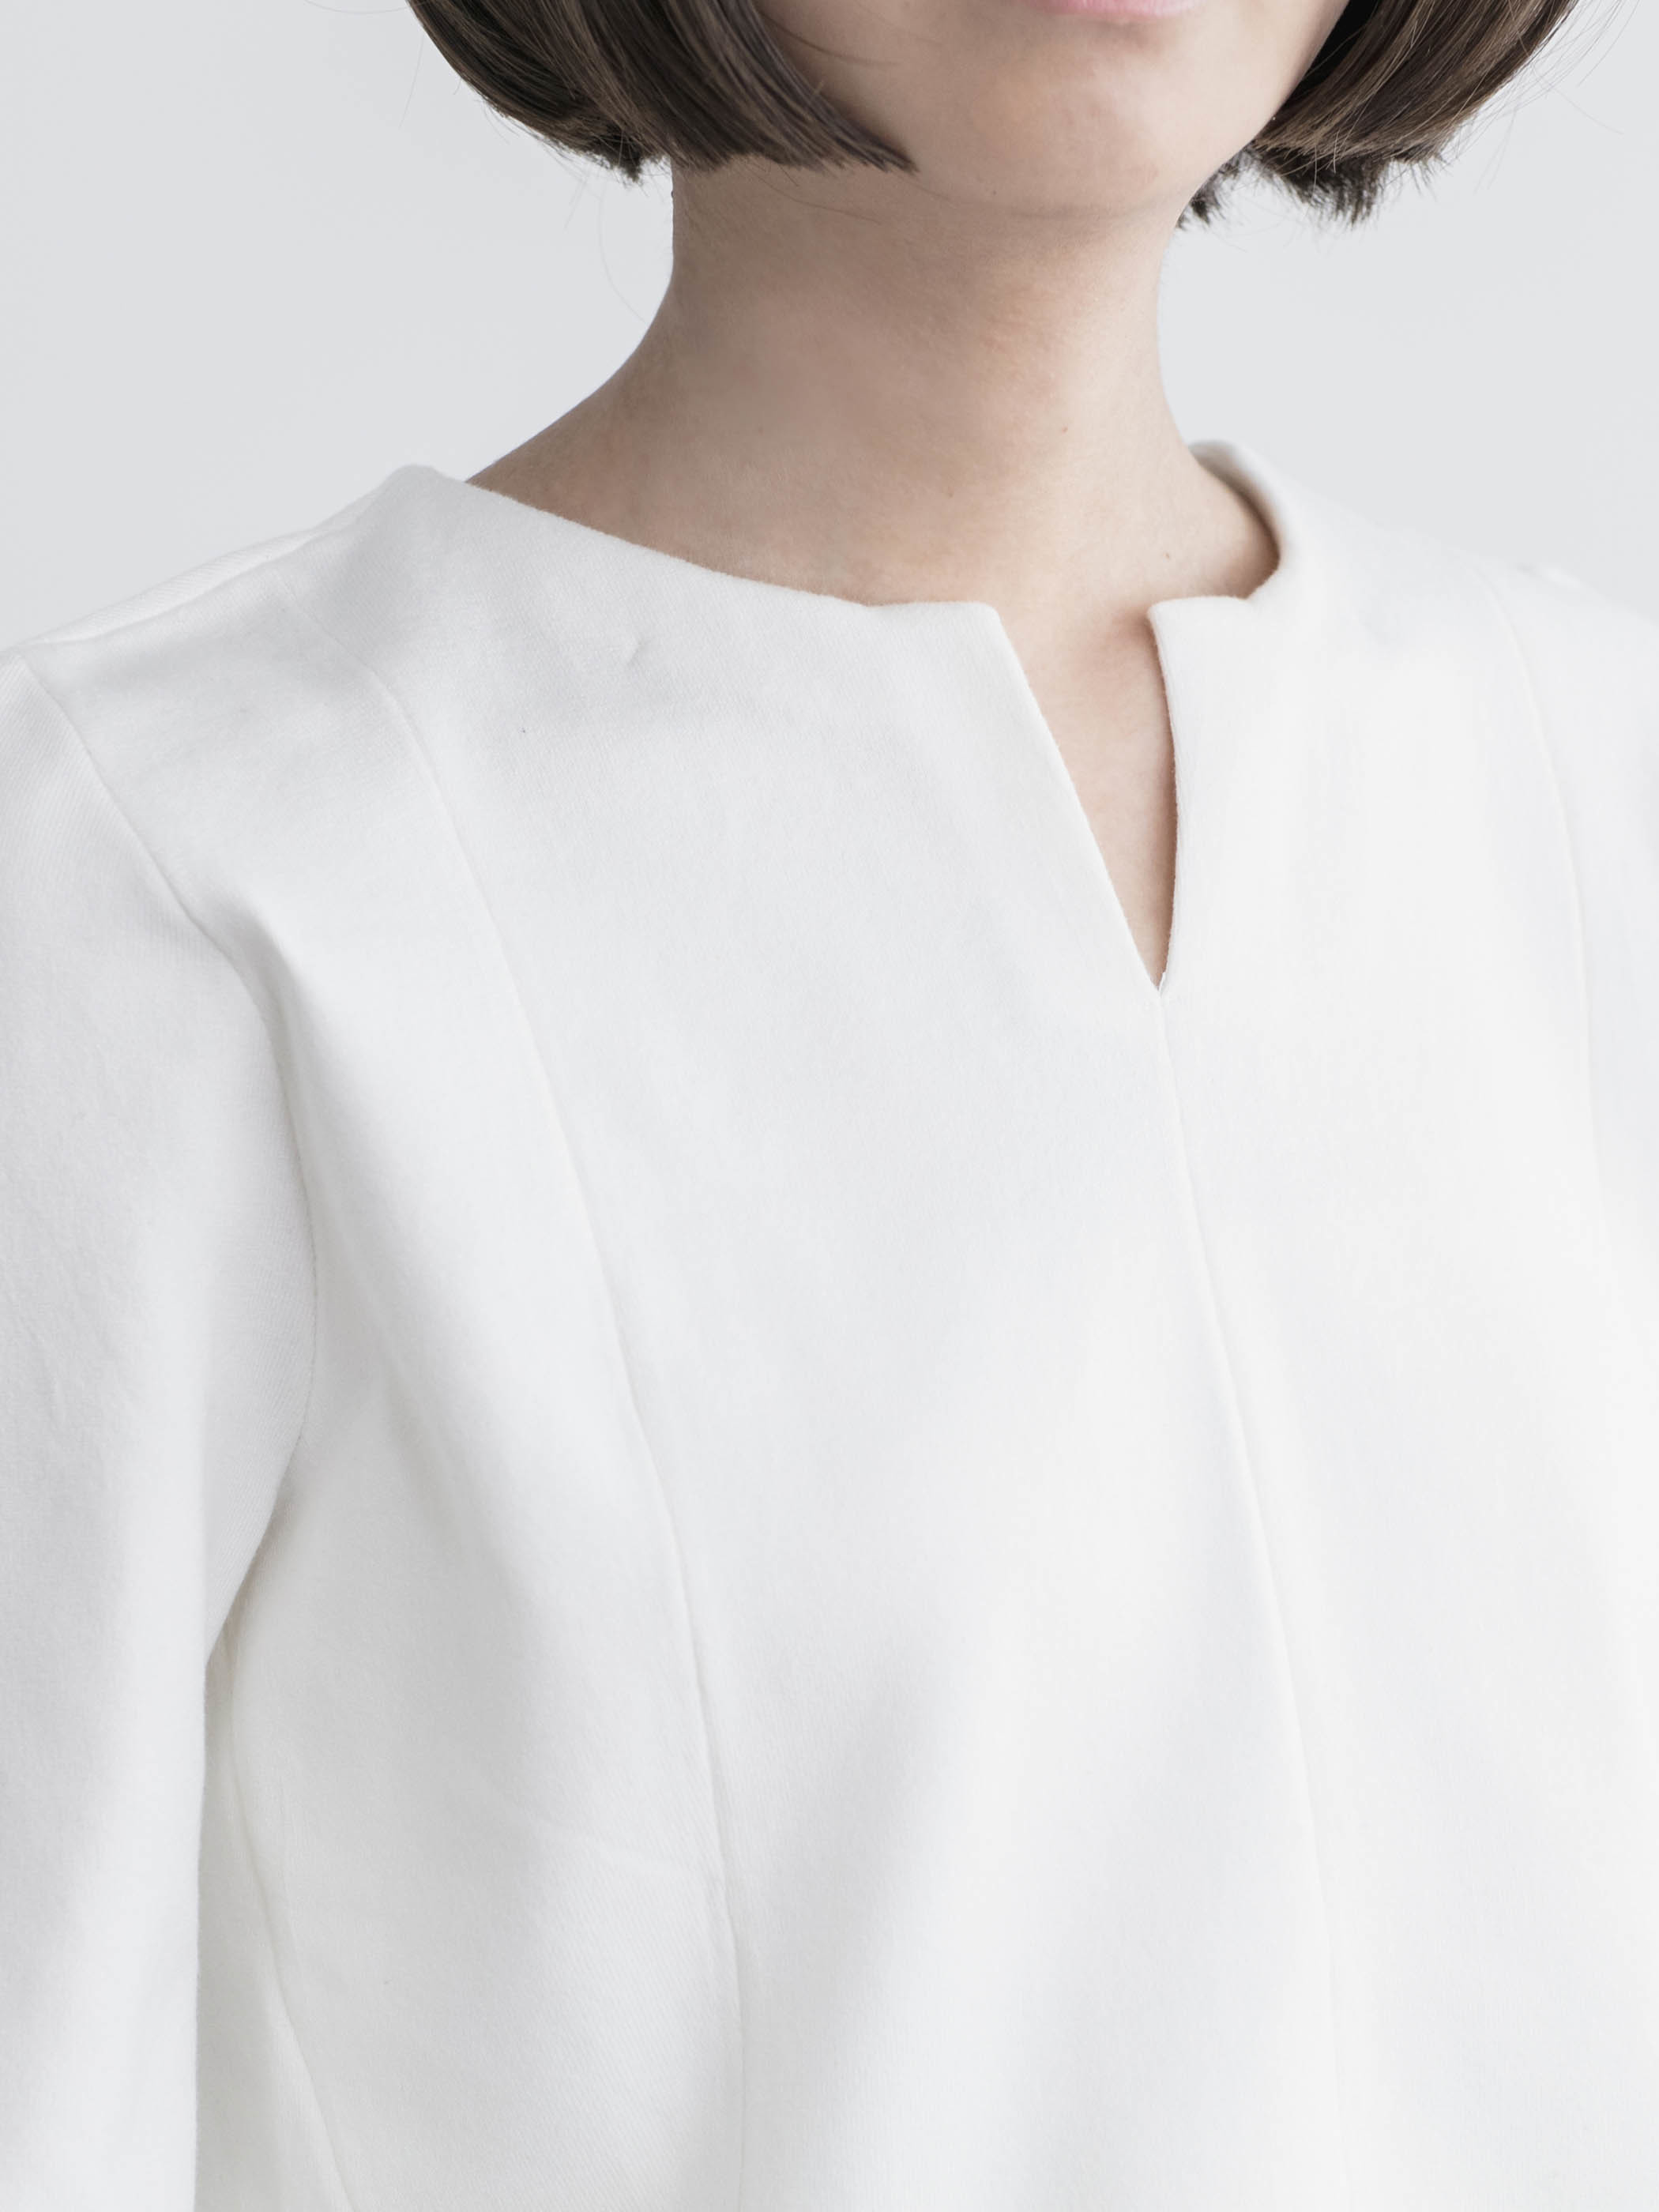 Work Wear collection Women’s V Necked Sweater　White(Vネックセーター・ホワイト)